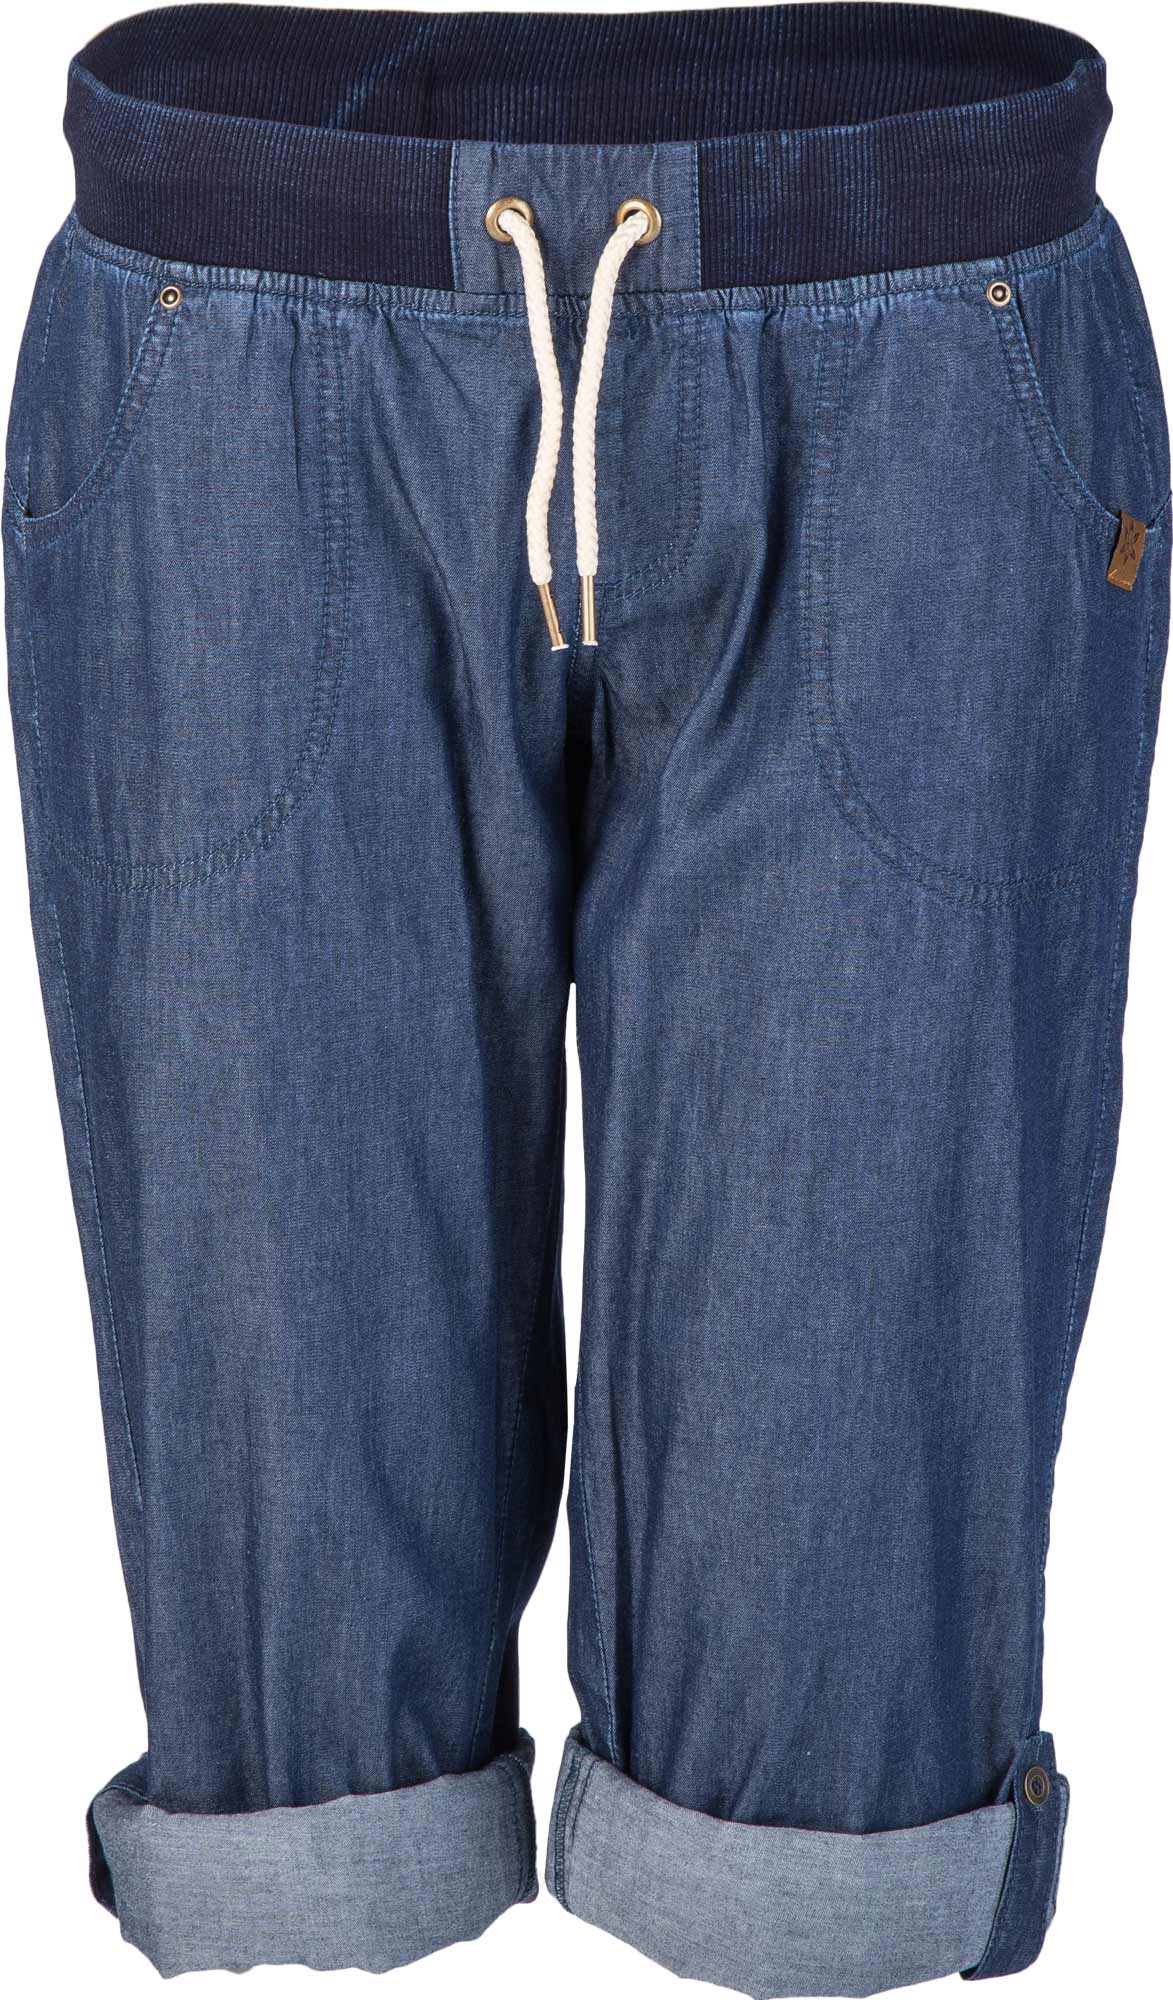 Dámské kalhoty džínového vzhledu